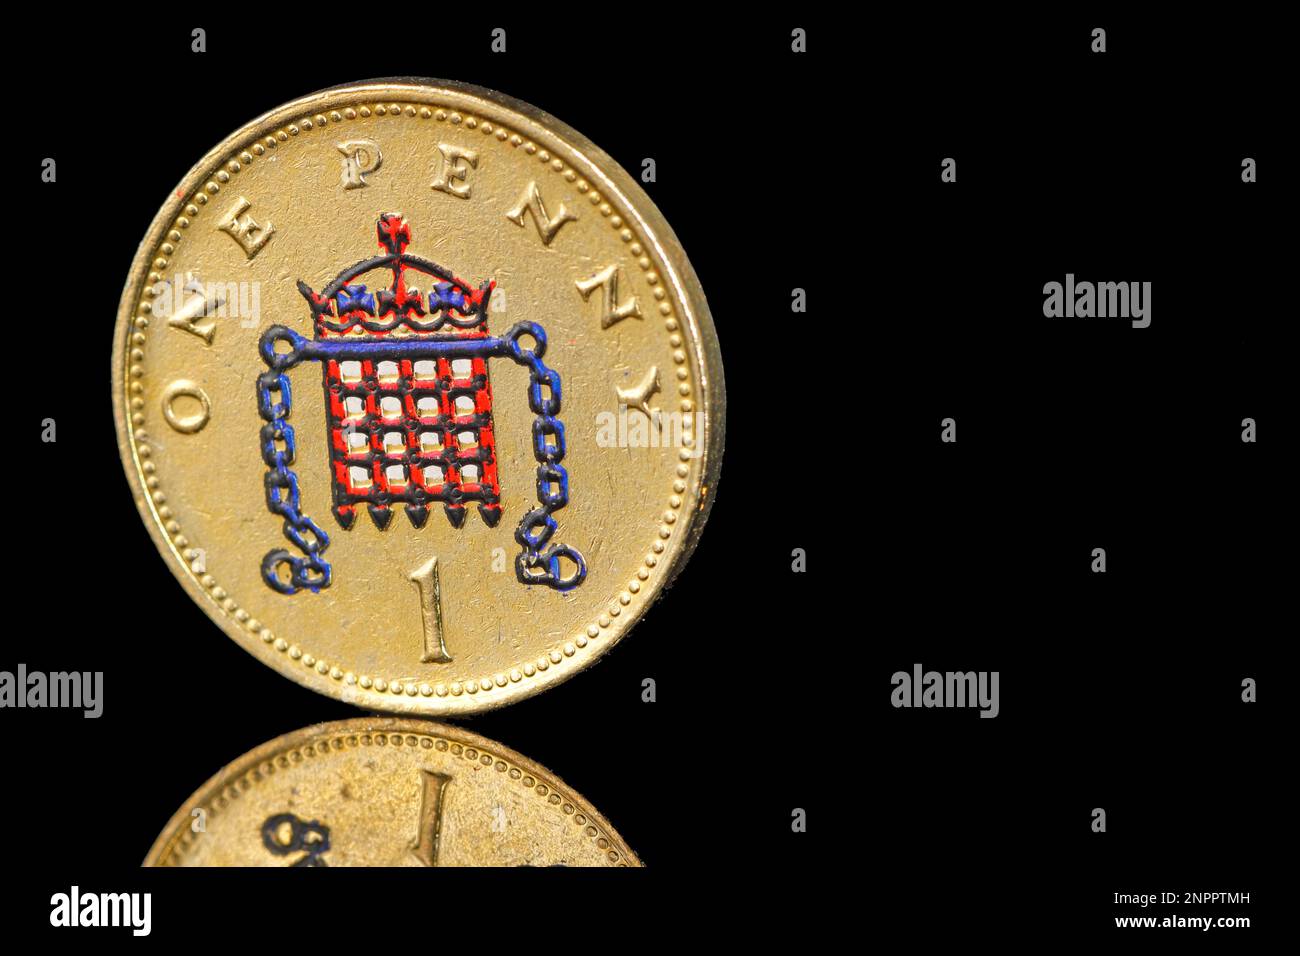 Una moneda de un centavo coloreada del reino unido con un portcullis coronado con cadenas Foto de stock